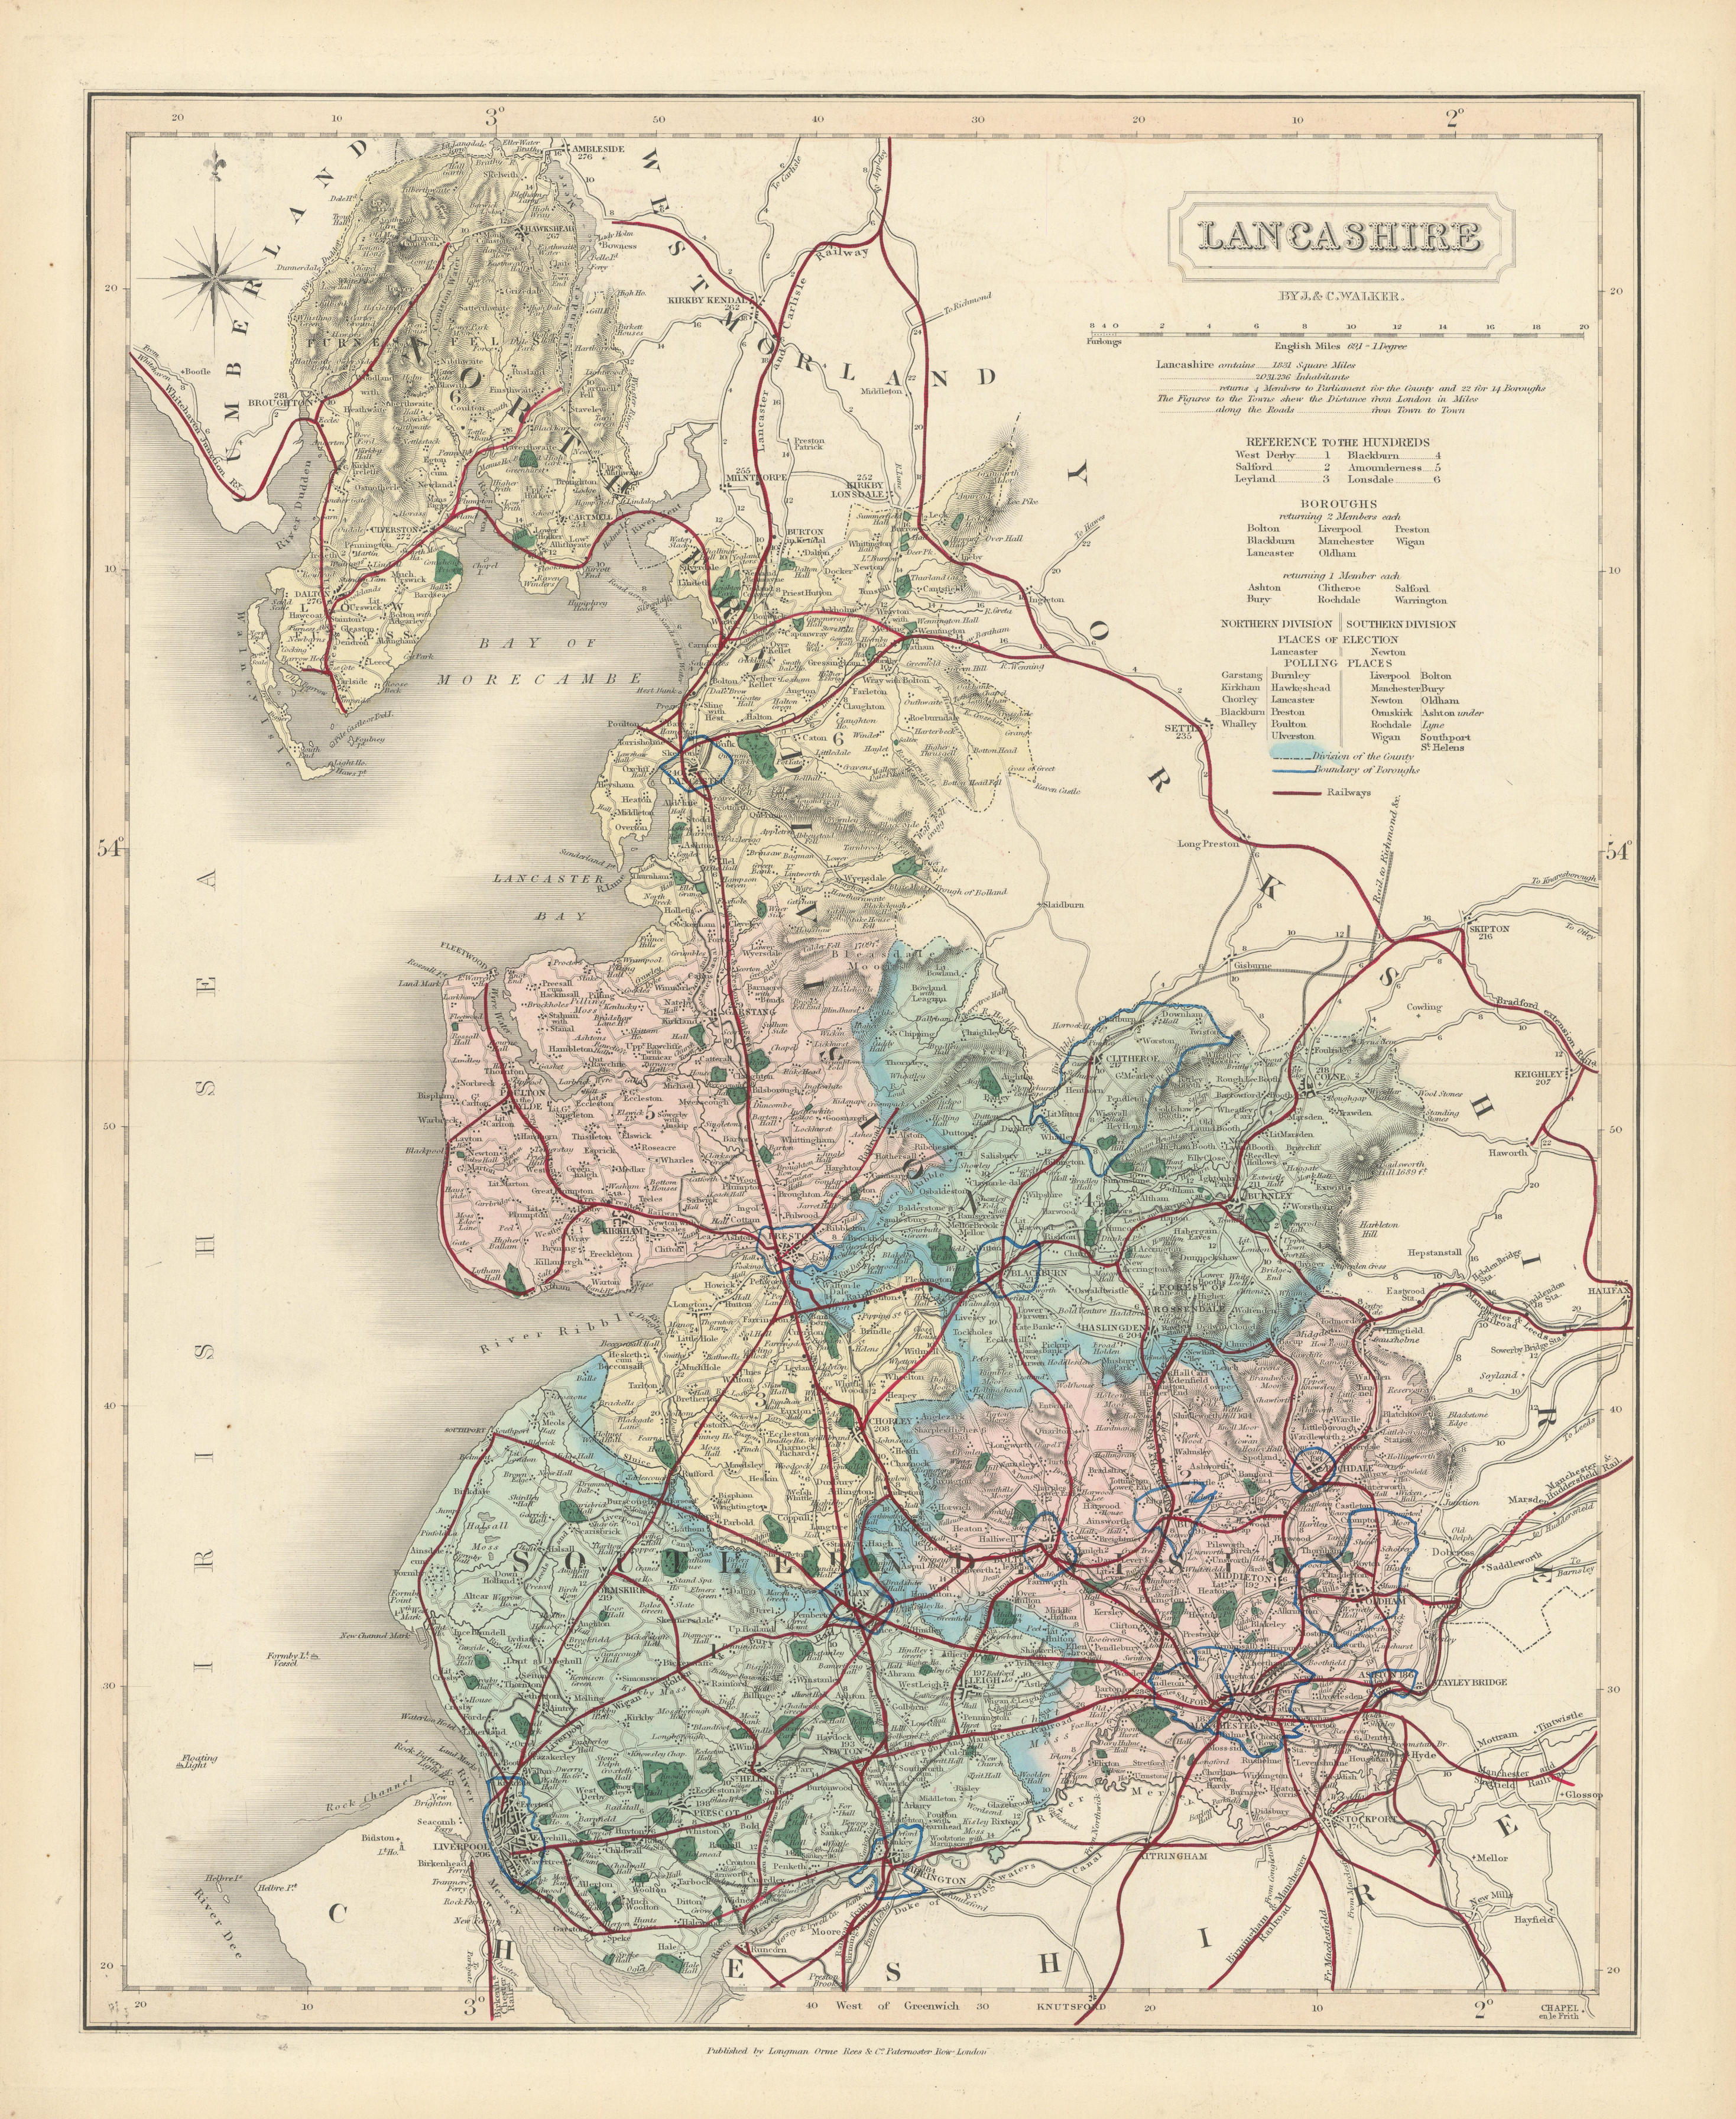 Associate Product Lancashire antique county map by J & C Walker. Railways & boroughs 1870